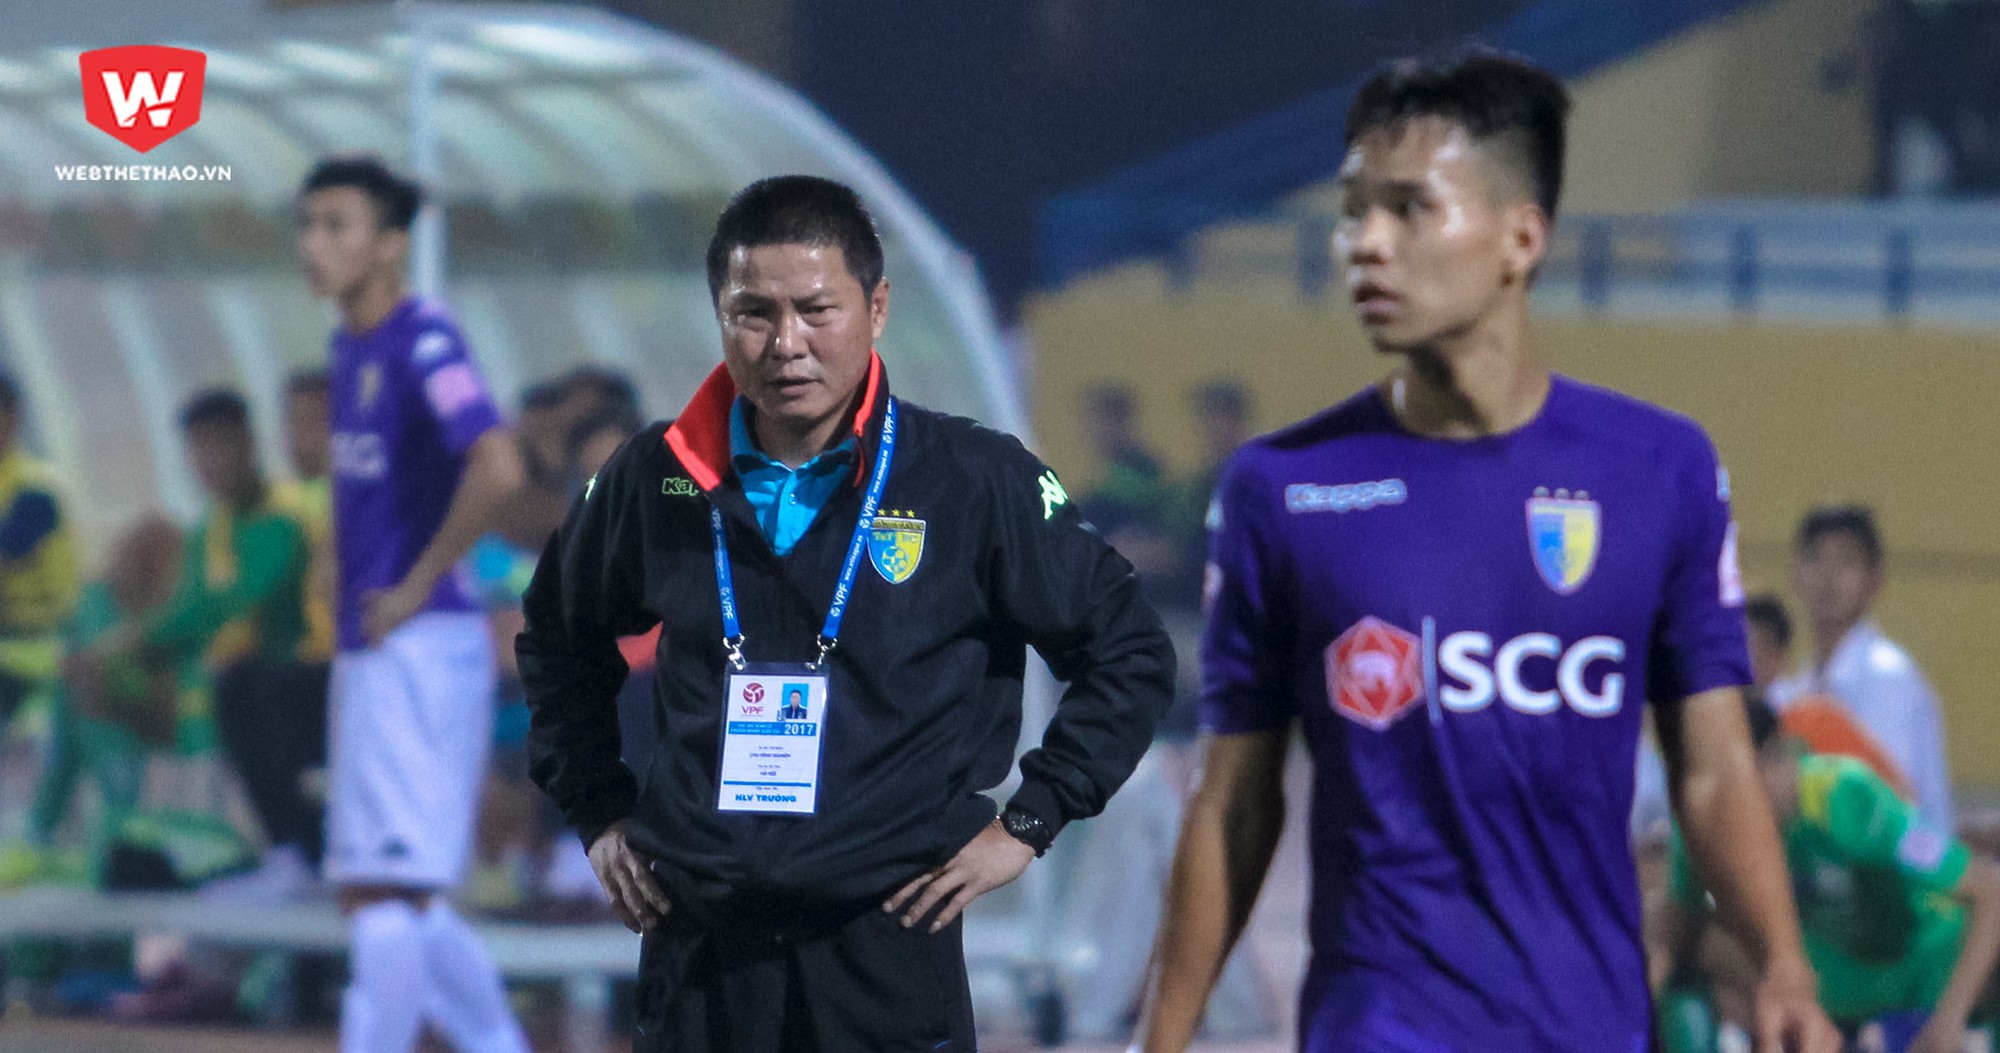 Hà Nội FC giành chiến thắng thuyết phục 4-0 trước CLB TPHCM nhưng HLV Chu Đình Nghiêm vẫn lo lắng vì Quảng Nam mới là đội giành lợi thế trong cuộc đua vô địch V.League 2017. Ảnh: Trung Thu.